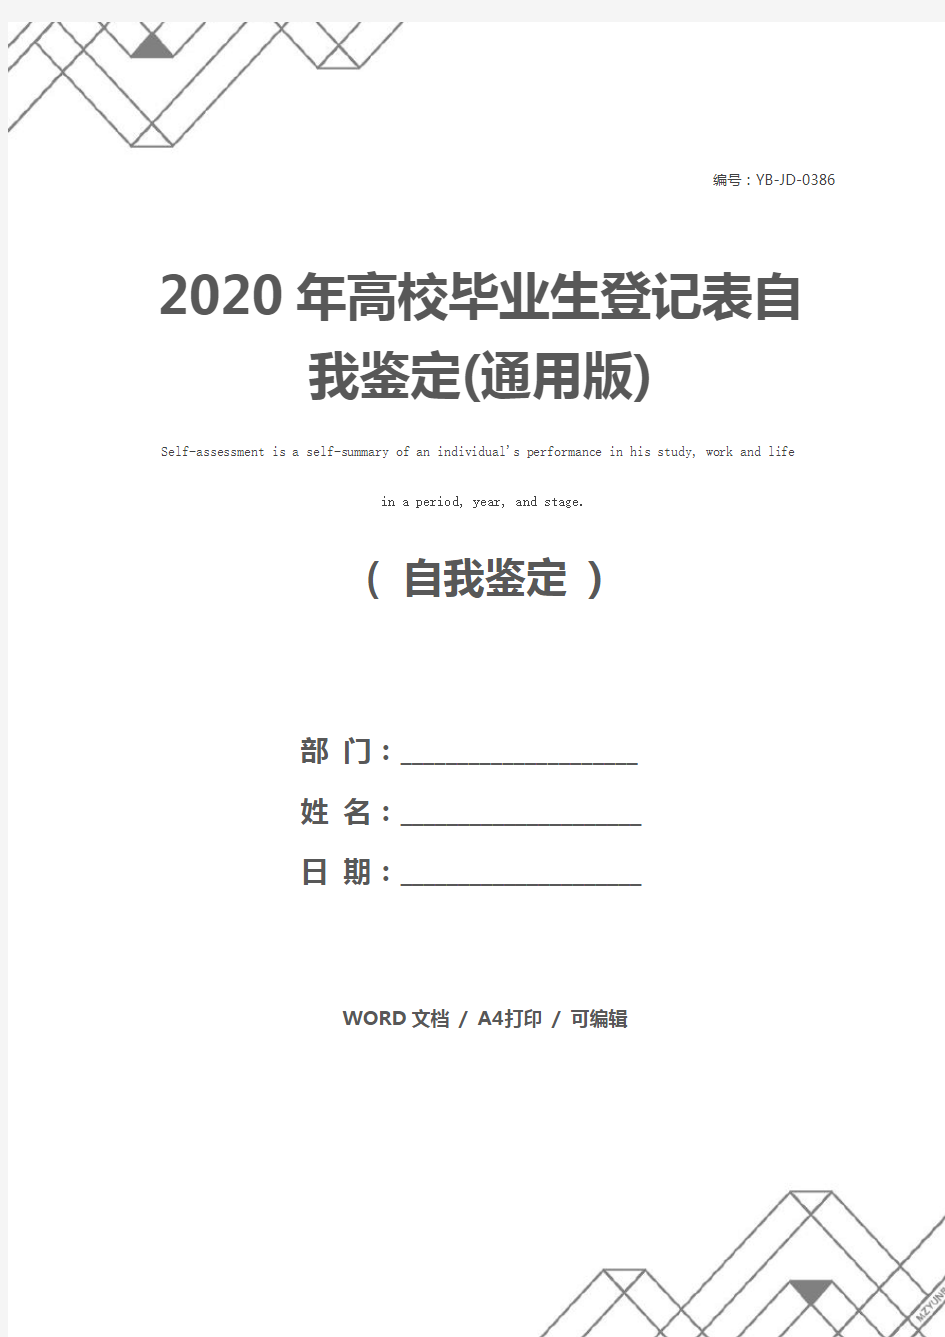 2020年高校毕业生登记表自我鉴定(通用版)